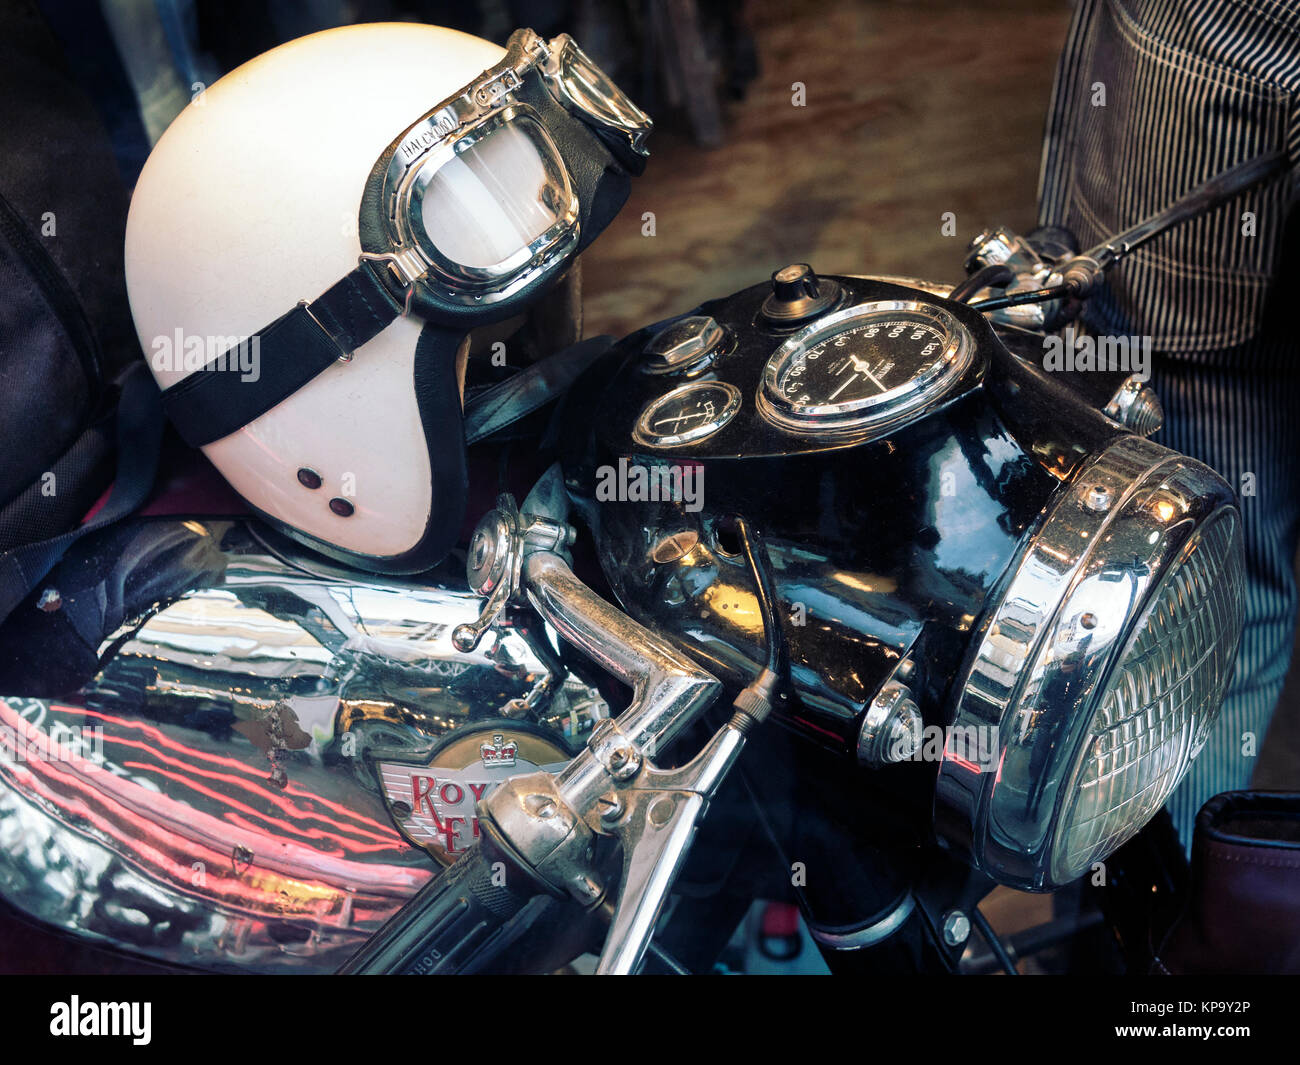 Moto Royal Enfield classic avec un casque sur le réservoir d'essence Banque D'Images